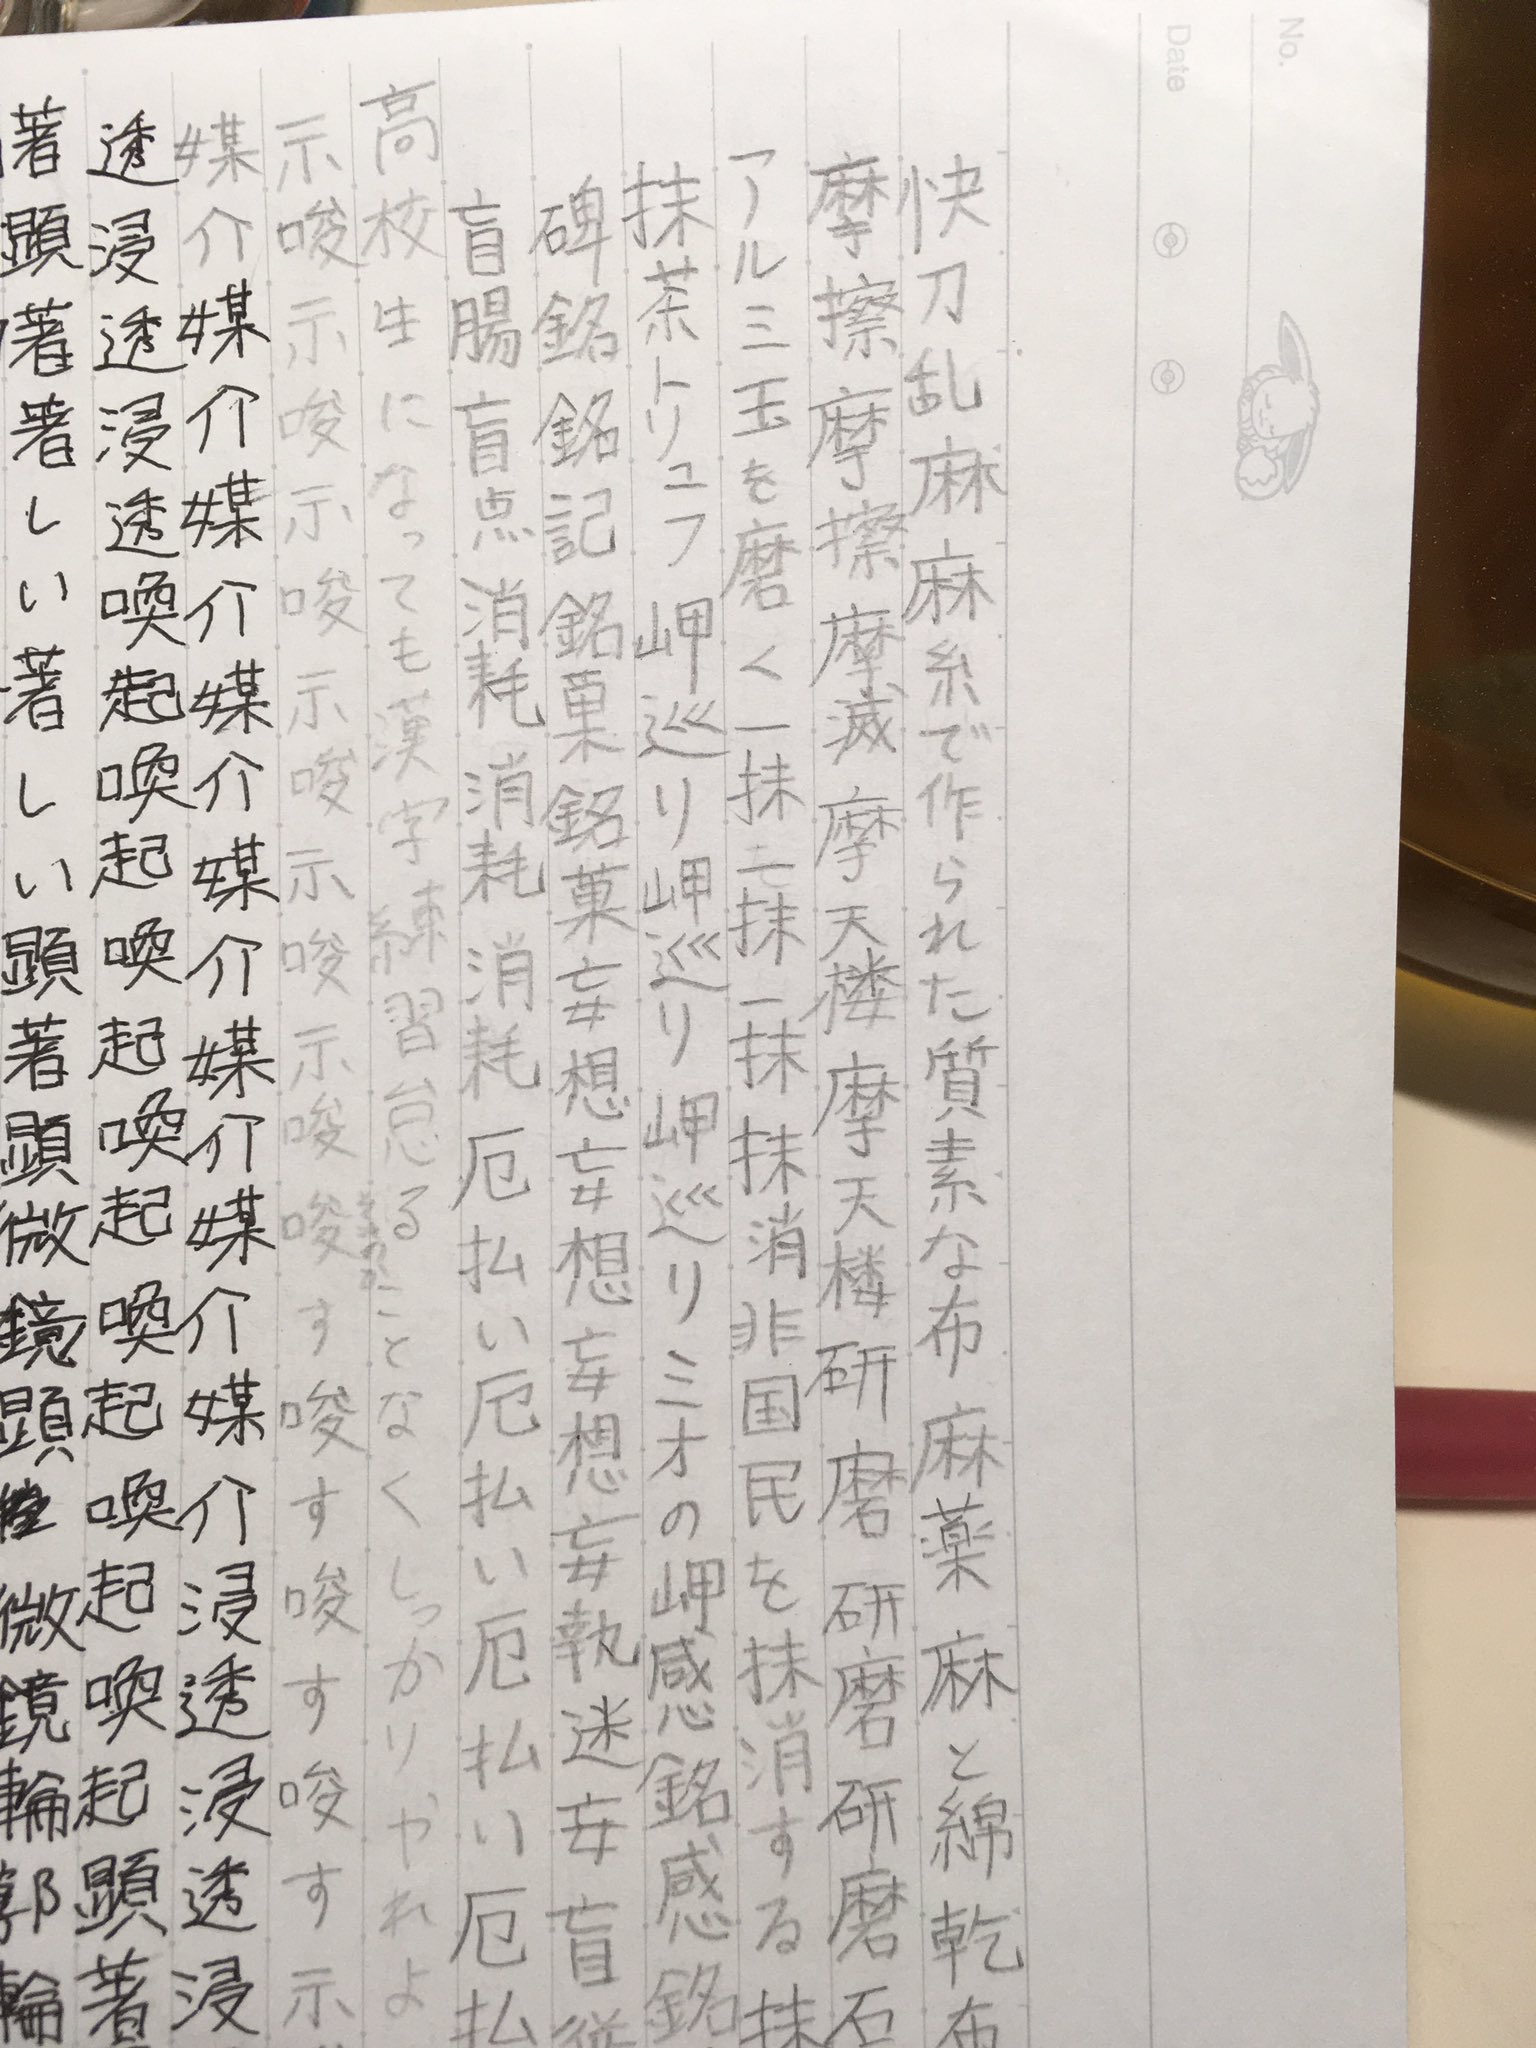 朝宮 2年ぶりに漢字練習しようとノート開いたがこの辺の例文に時代を感じる それは扨置き去年全く漢字練習しなかったわごめん 中学生の自分 T Co Qyuq3darm2 Twitter